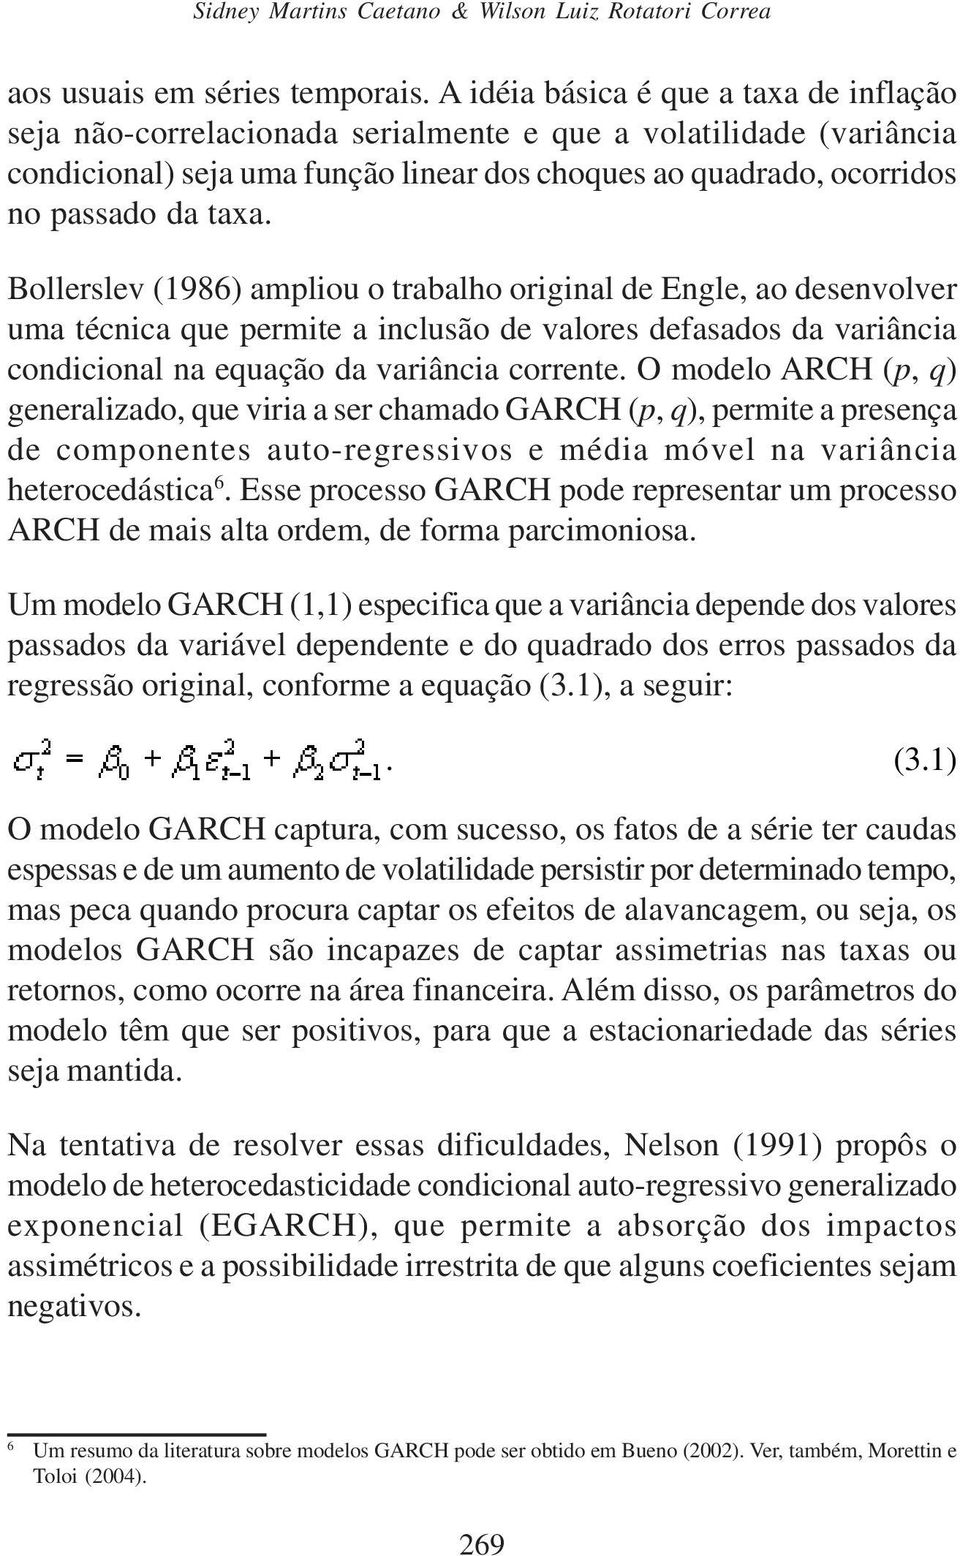 Bollerslev (1986) ampliou o trabalho original de Engle, ao desenvolver uma técnica que permite a inclusão de valores defasados da variância condicional na equação da variância corrente.